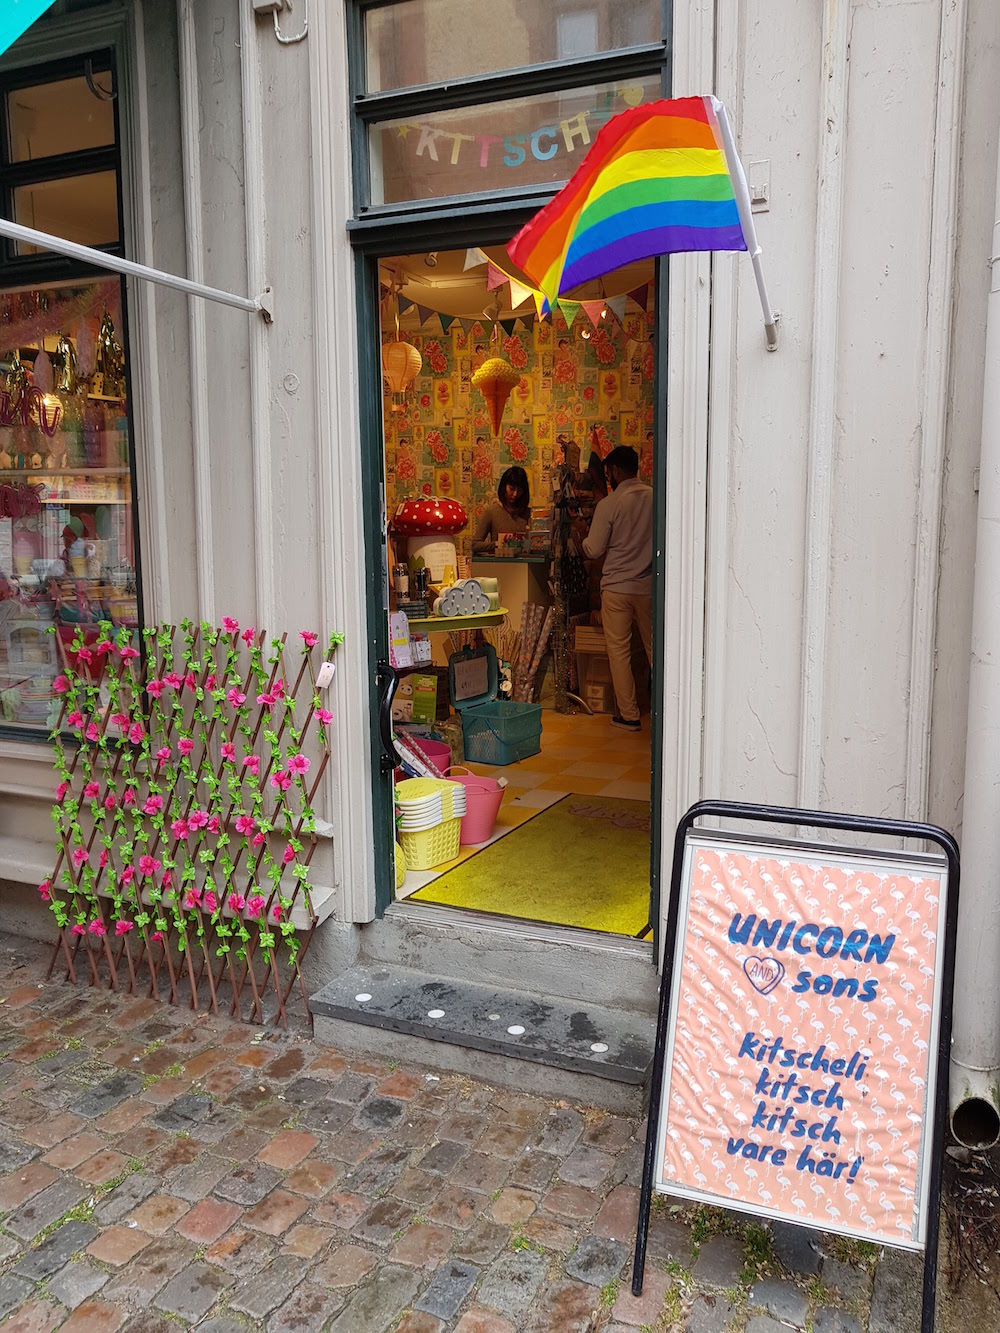 Schweden Gayurlaub: Homosexuelle sind hier überall willkommen